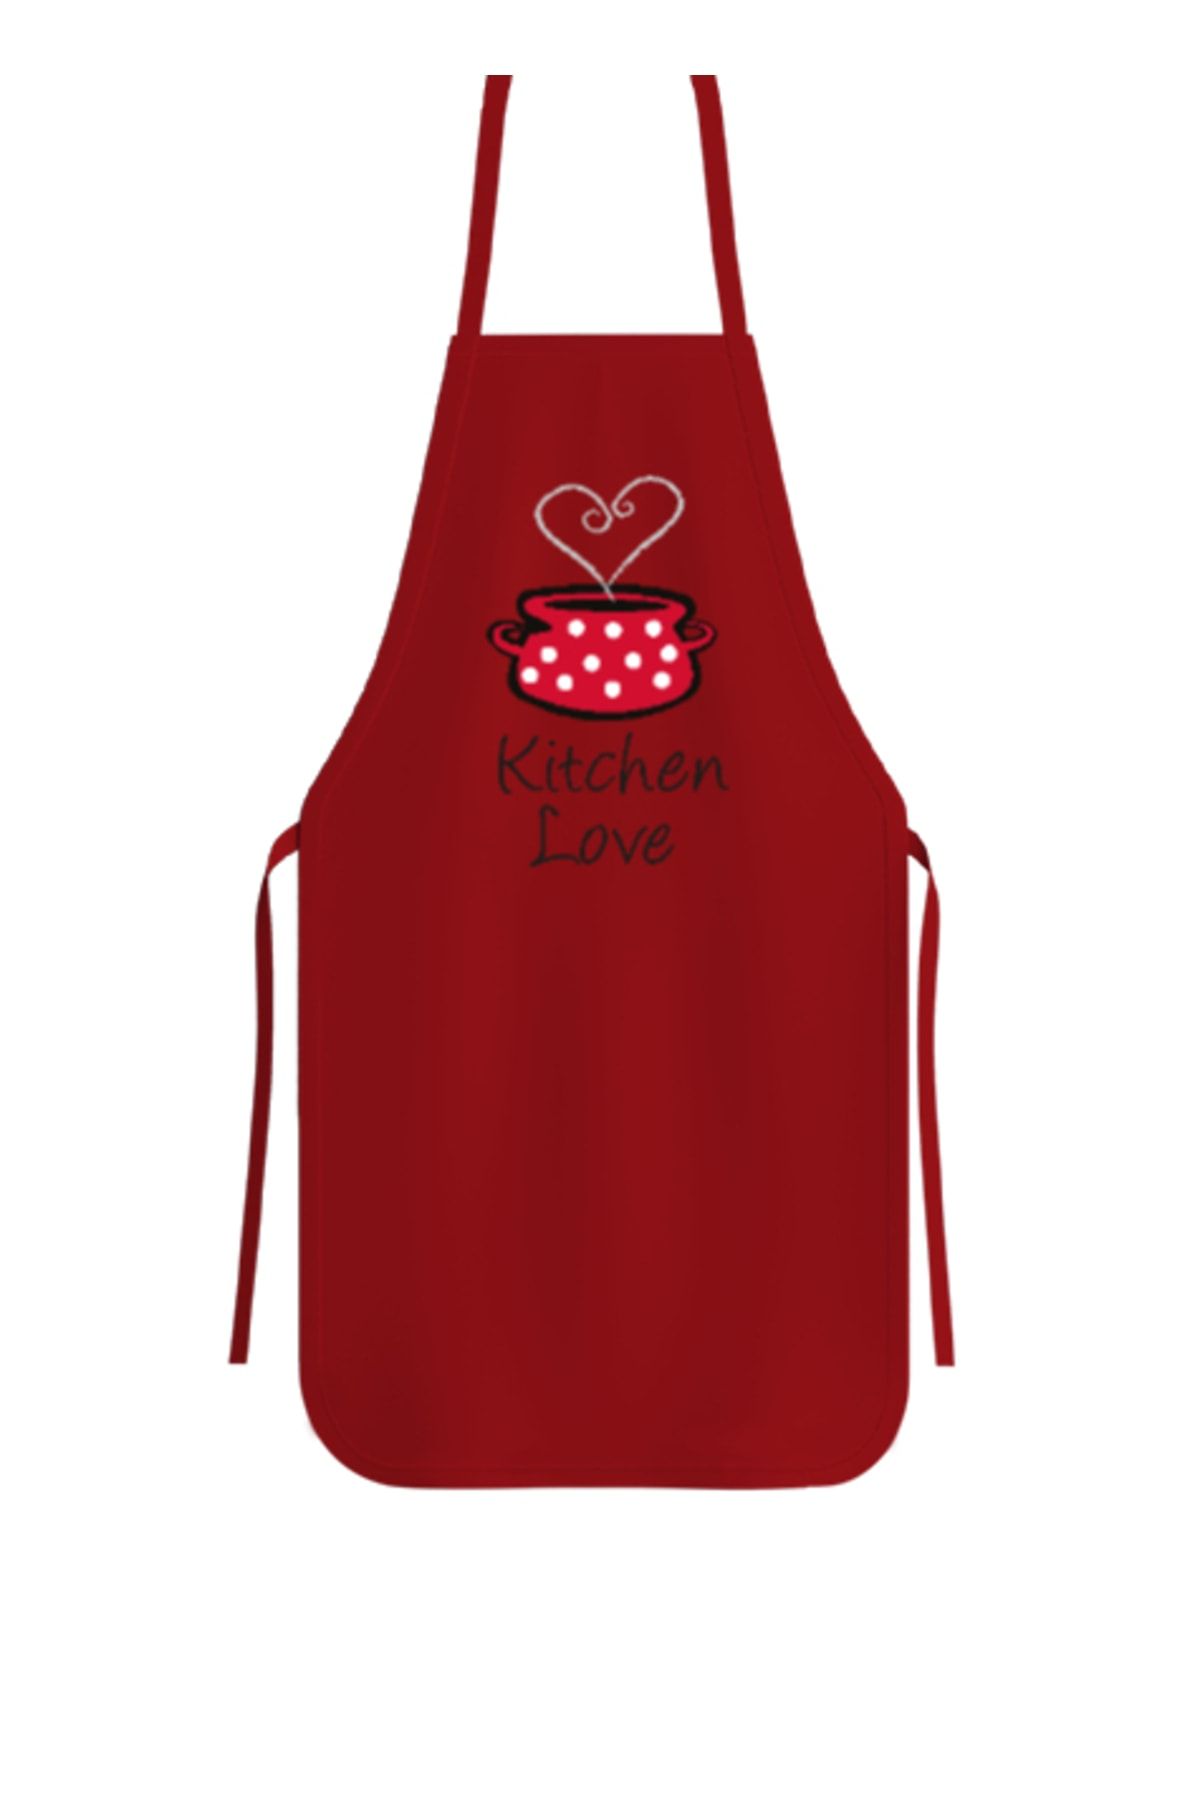 Tisho Kitchen Love - Mutfak Aşkı Kırmızı Mutfak Önlüğü